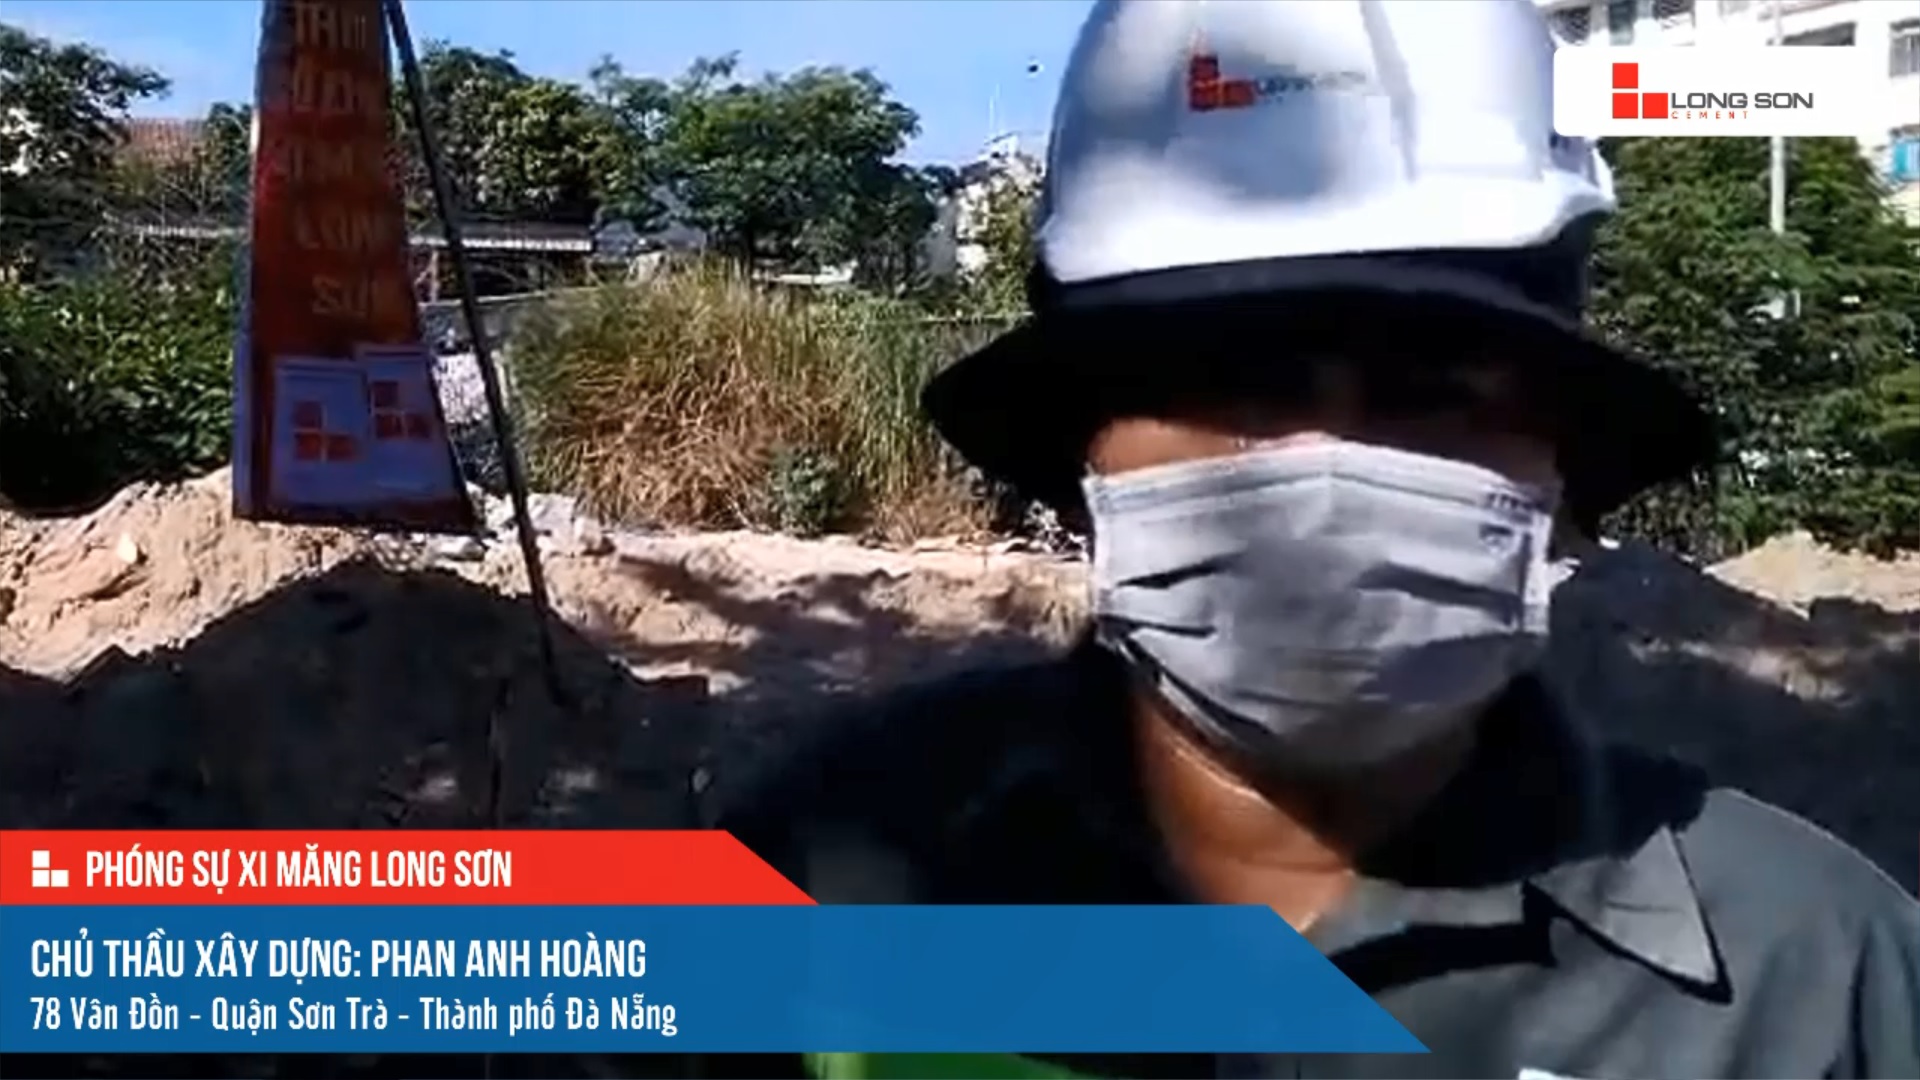 Phóng sự công trình sử dụng xi măng Long Sơn tại Đà Nẵng ngày 13/07/2021